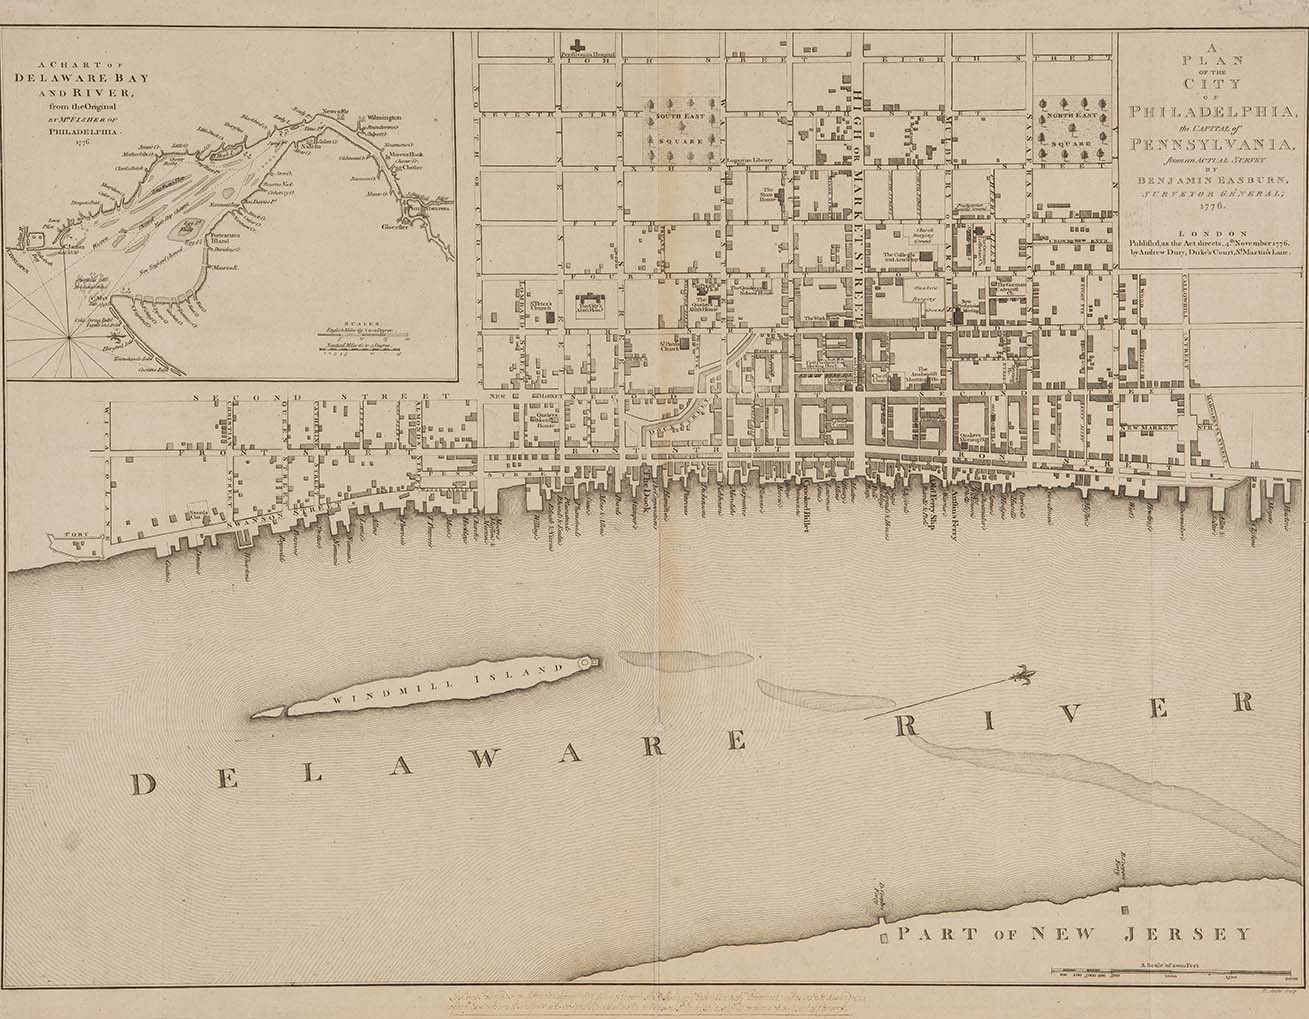 Easburn Map of Philadelphia